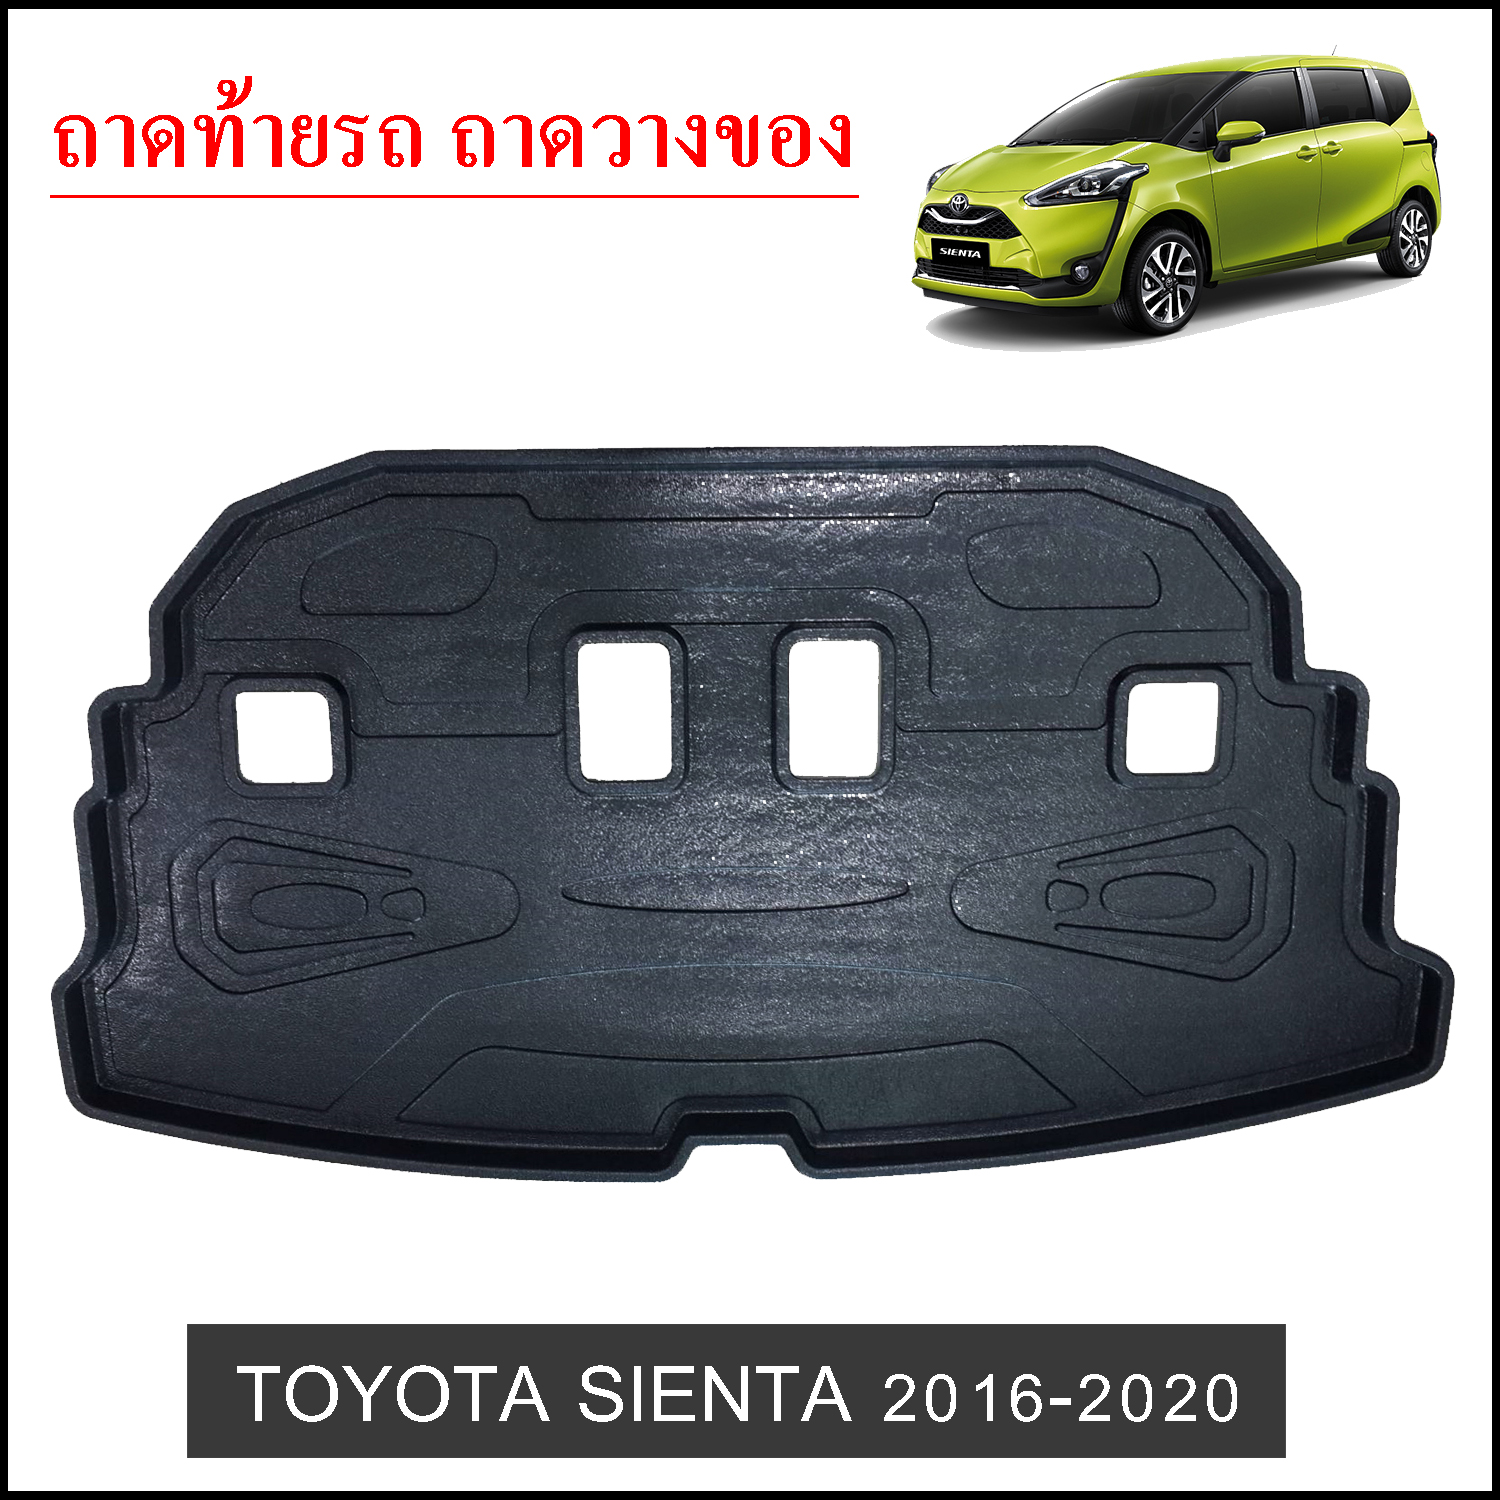 ถาดท้ายวางของ Toyota Sienta 2016-2020